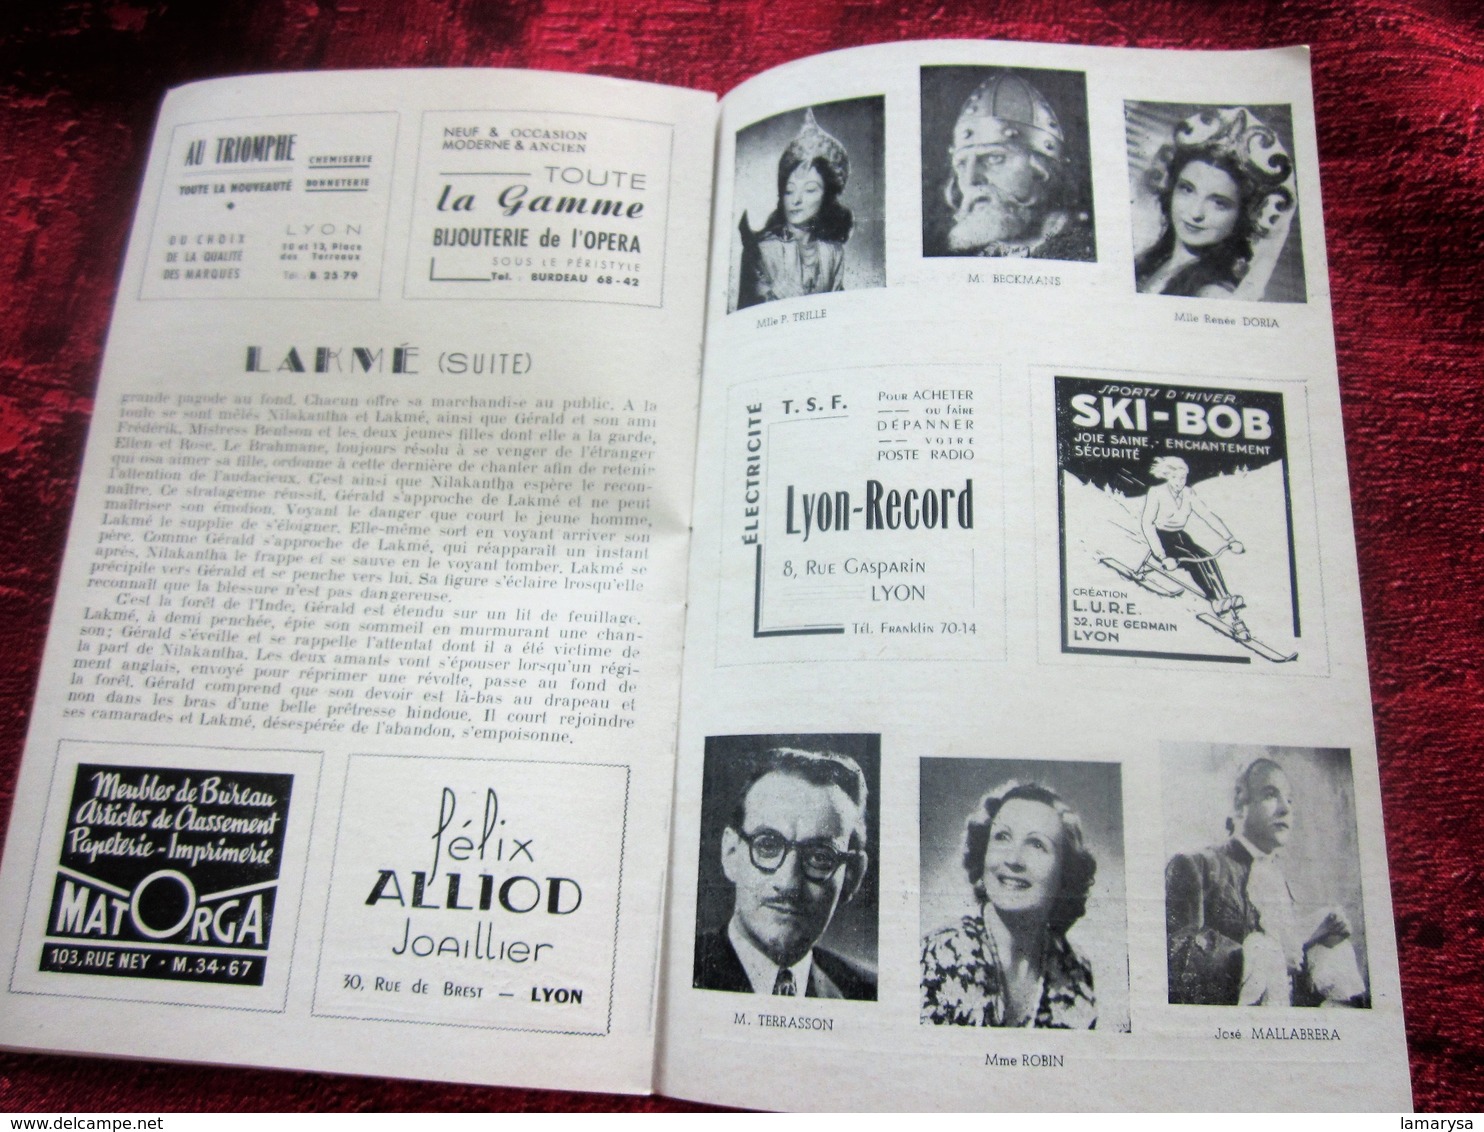 1947/48-LAKMé - GRAND BALLETS-PROGRAMME OPÉRA de LYON-SPECTACLE-PHOTOS ARTISTES COMÉDIENS -ACTEURS-DANSE -PUBLICITÉ